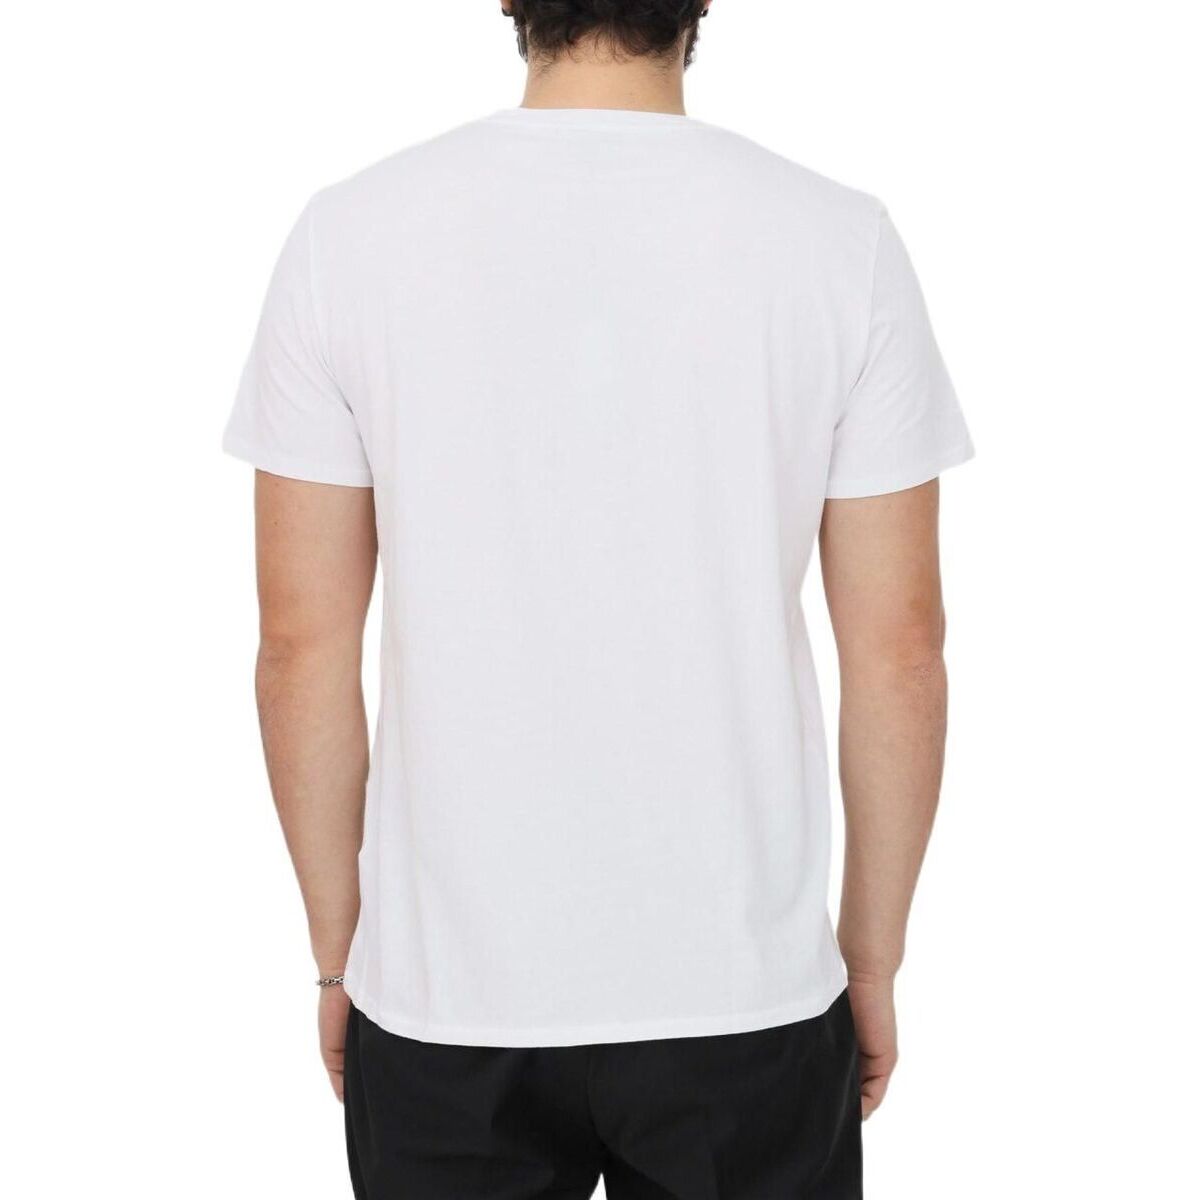 大特価新品 JUST CAVALLI ジャスト カヴァリ WHITE Tシャツ メンズ 春 